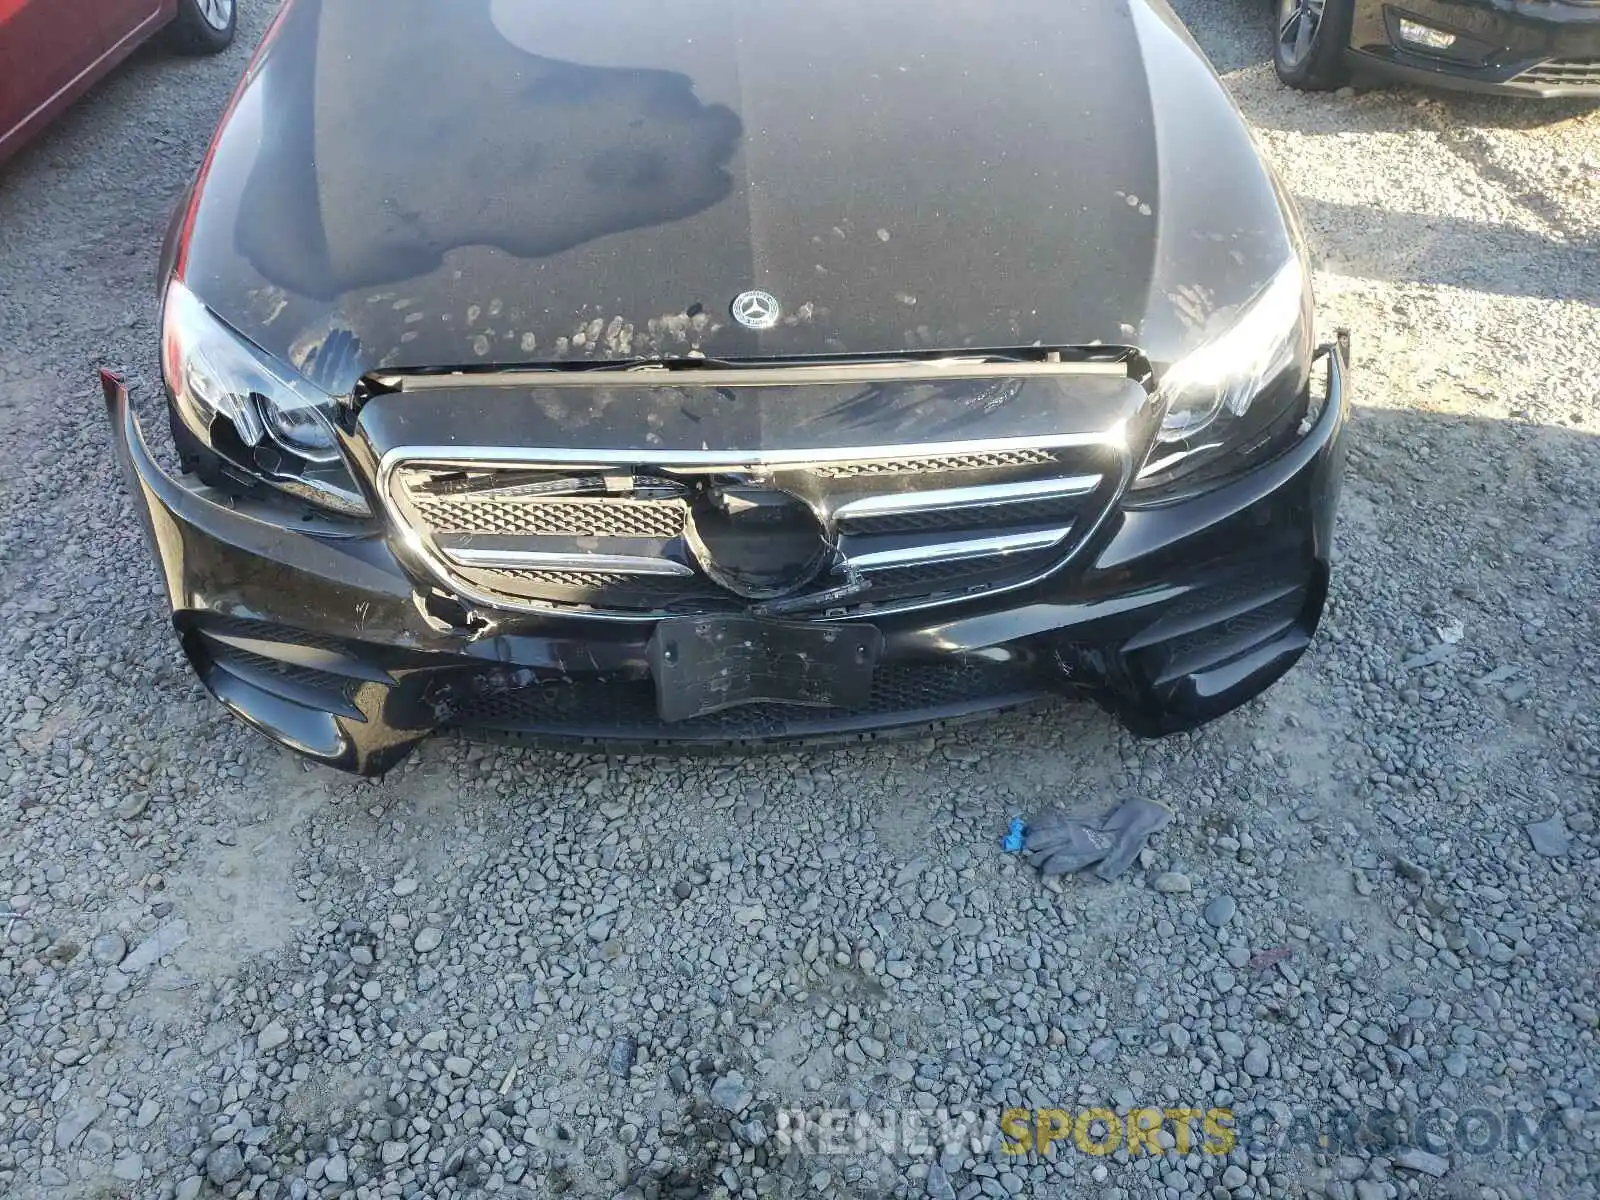 9 Photograph of a damaged car WDDZF4JB0KA608732 MERCEDES-BENZ E CLASS 2019